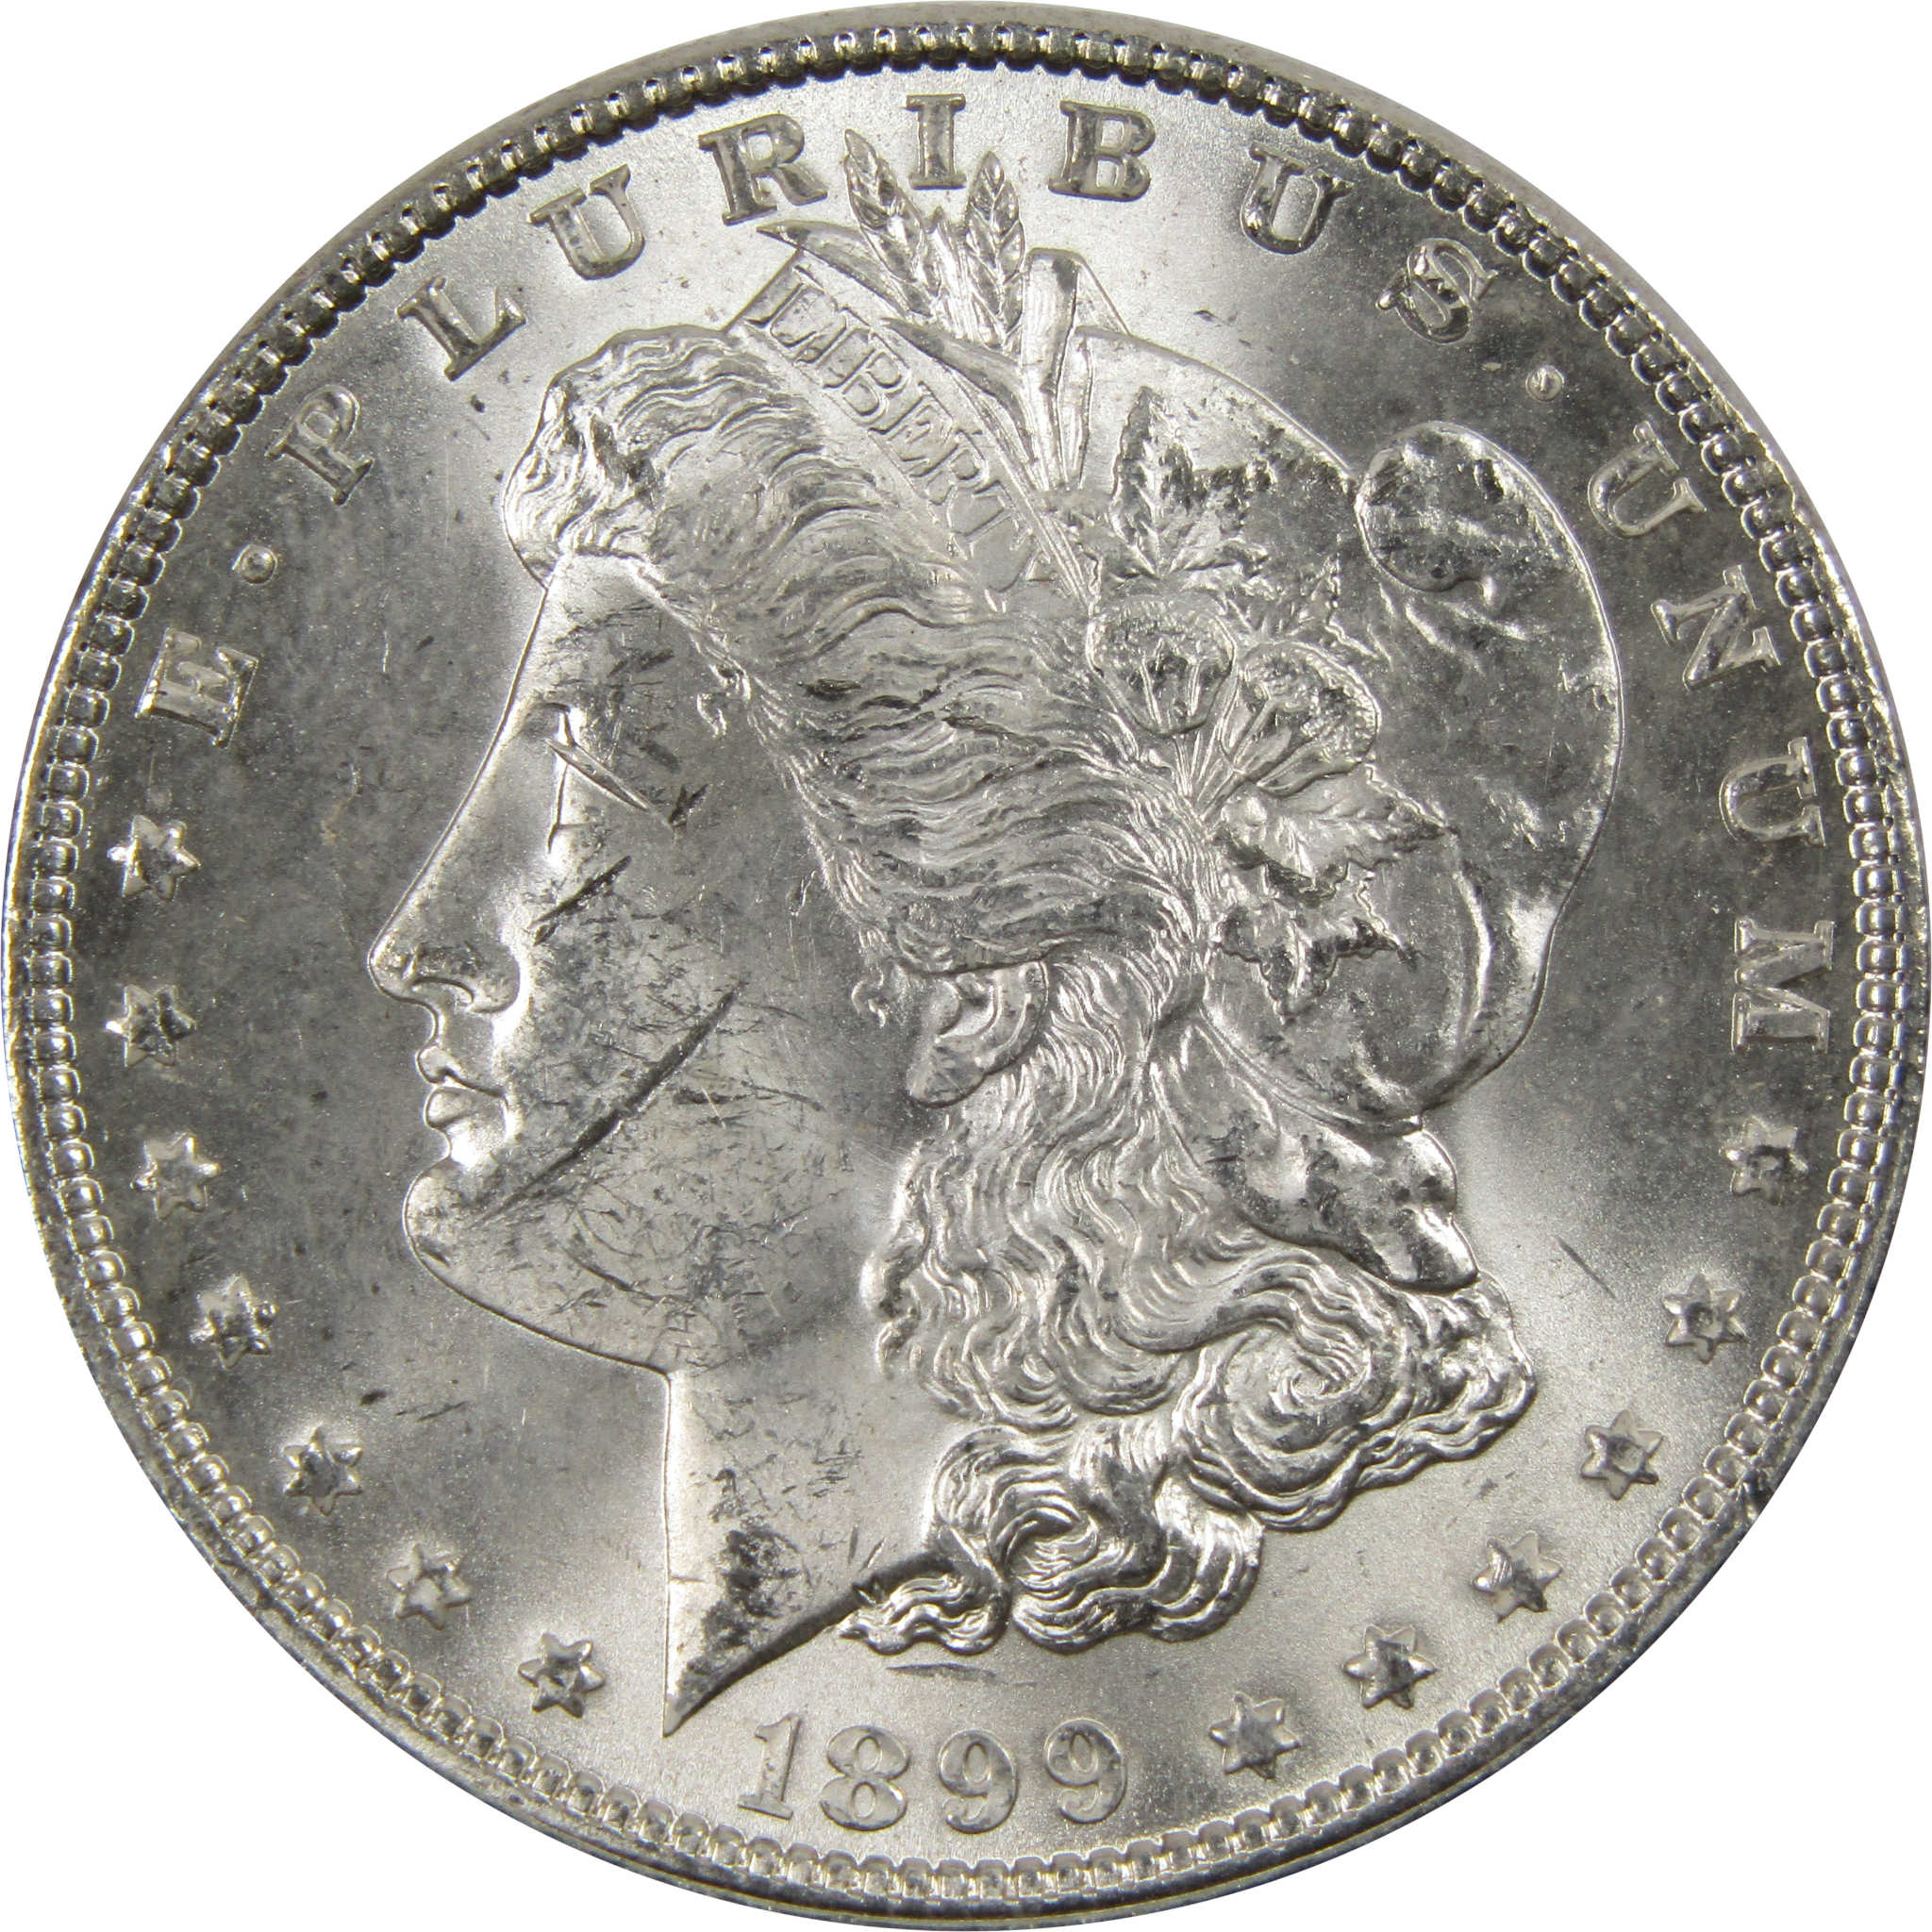 1899 Morgan Dollar BU Uncirculated 90% Silver $1 Coin SKU:I7309 - Morgan coin - Morgan silver dollar - Morgan silver dollar for sale - Profile Coins &amp; Collectibles